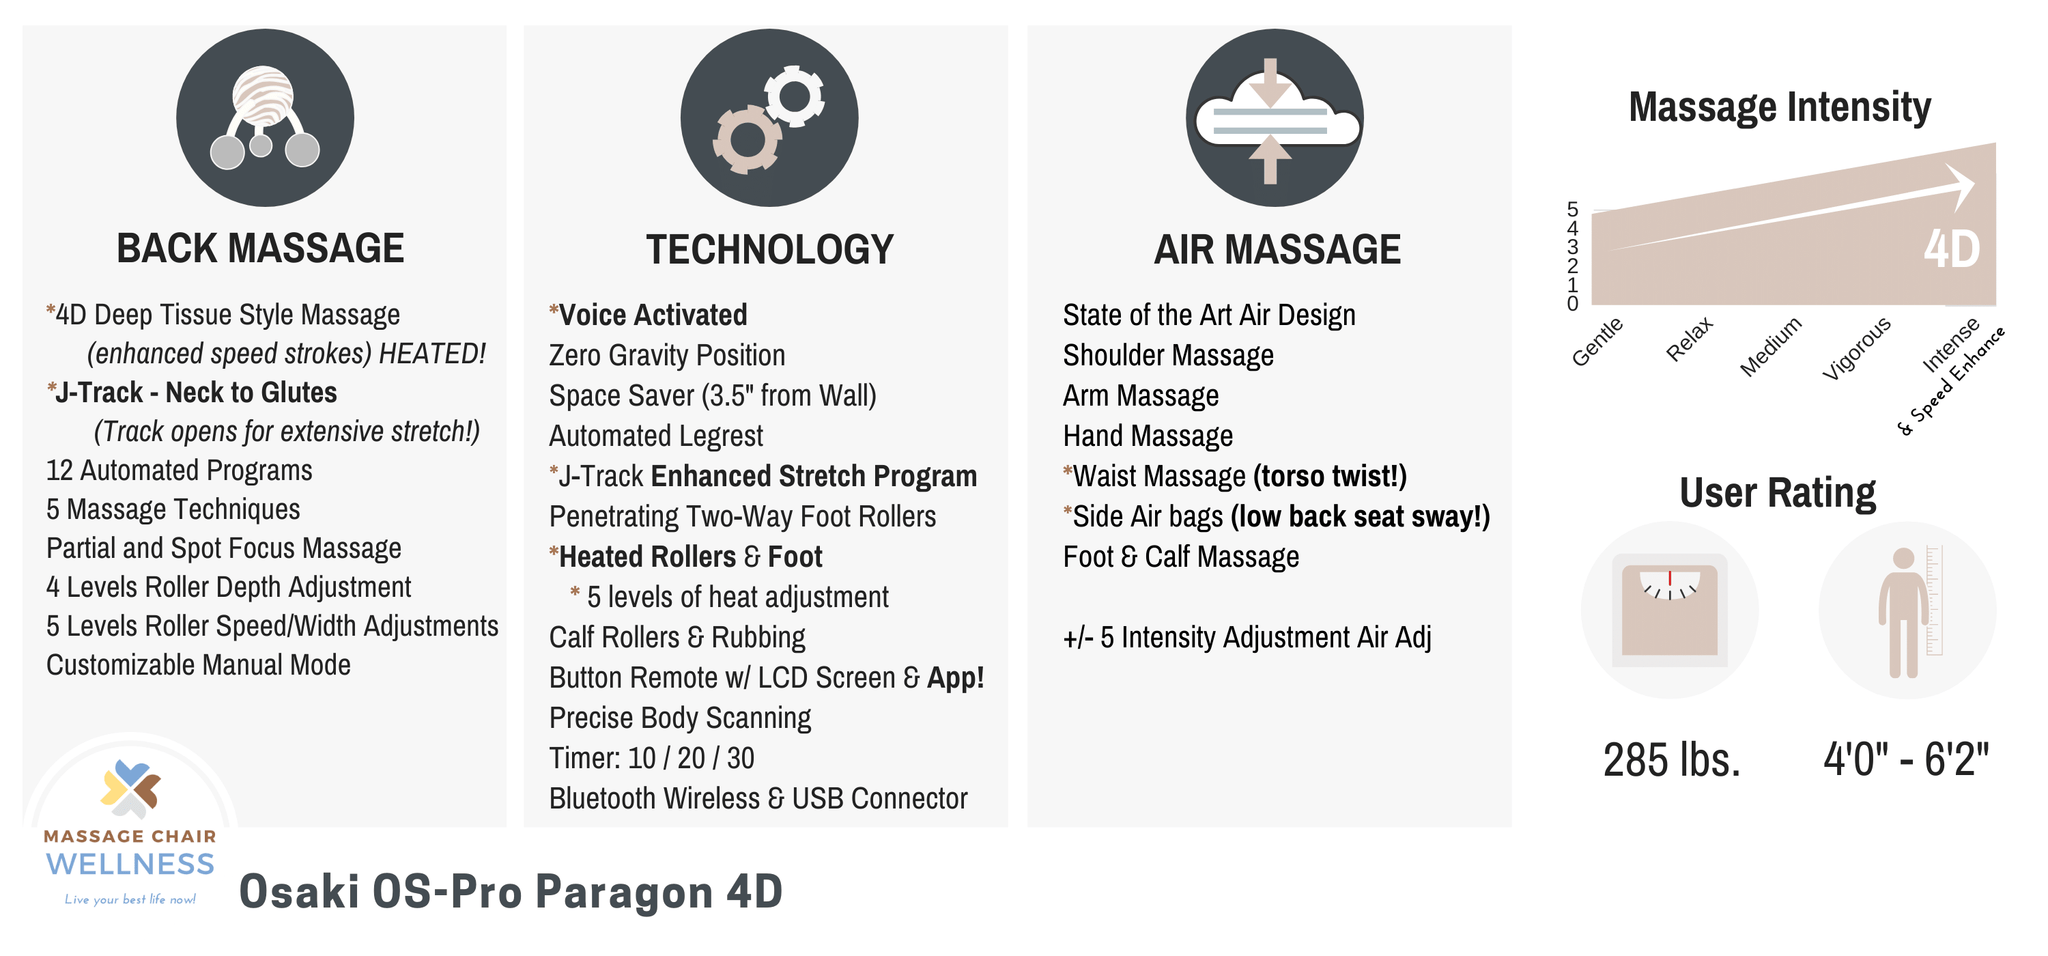 Osaki OS-Pro Paragon Product Summary